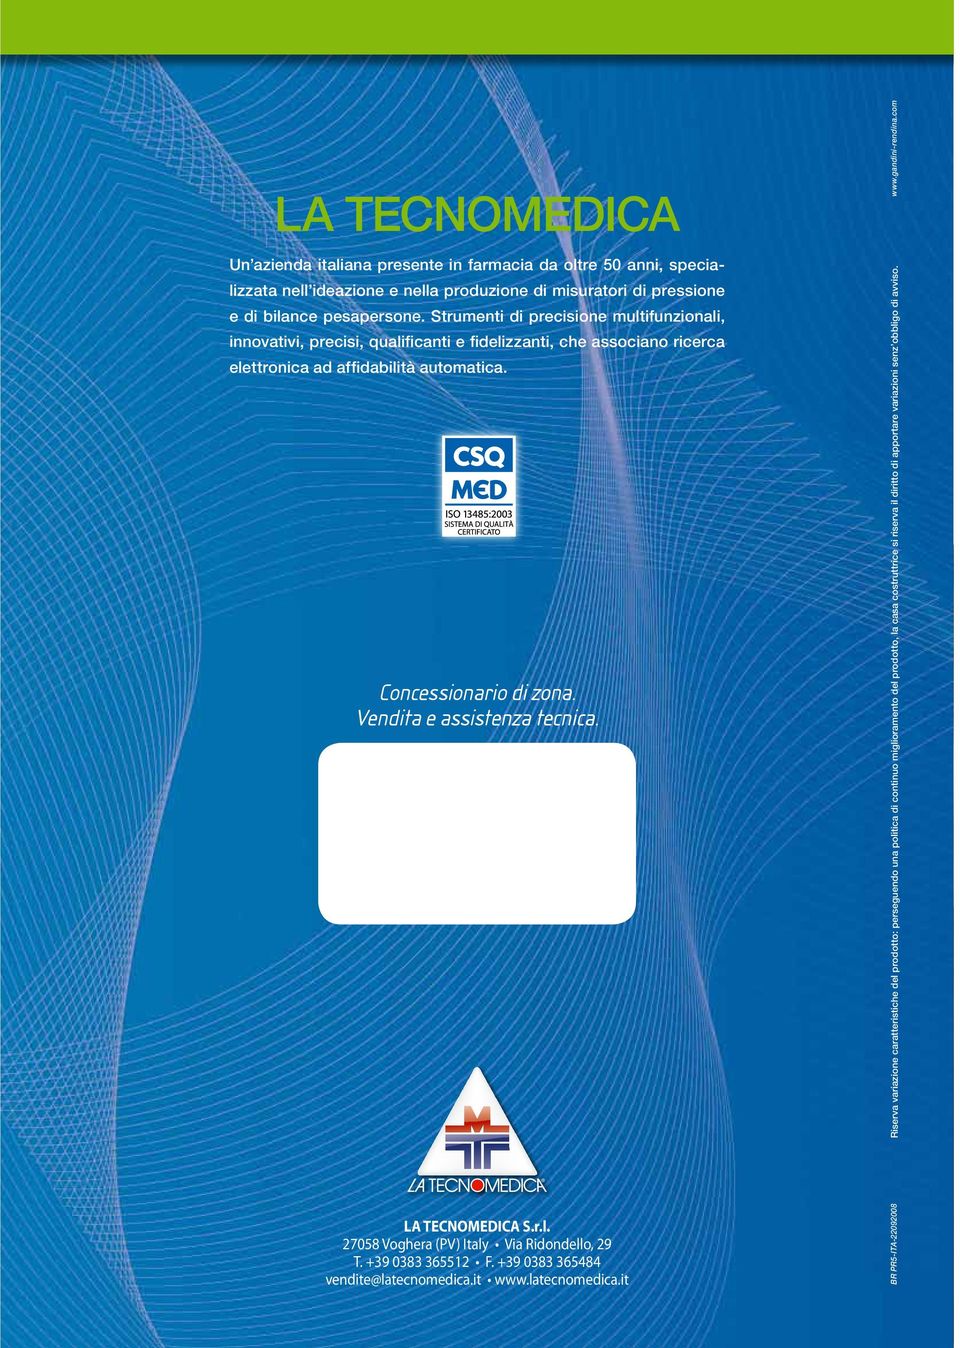 Vendita e assistenza tecnica. LA TECNOMEDICA S.r.l. 27058 Voghera (PV) Italy Via Ridondello, 29 T. +39 0383 365512 F. +39 0383 365484 vendite@latecnomedica.